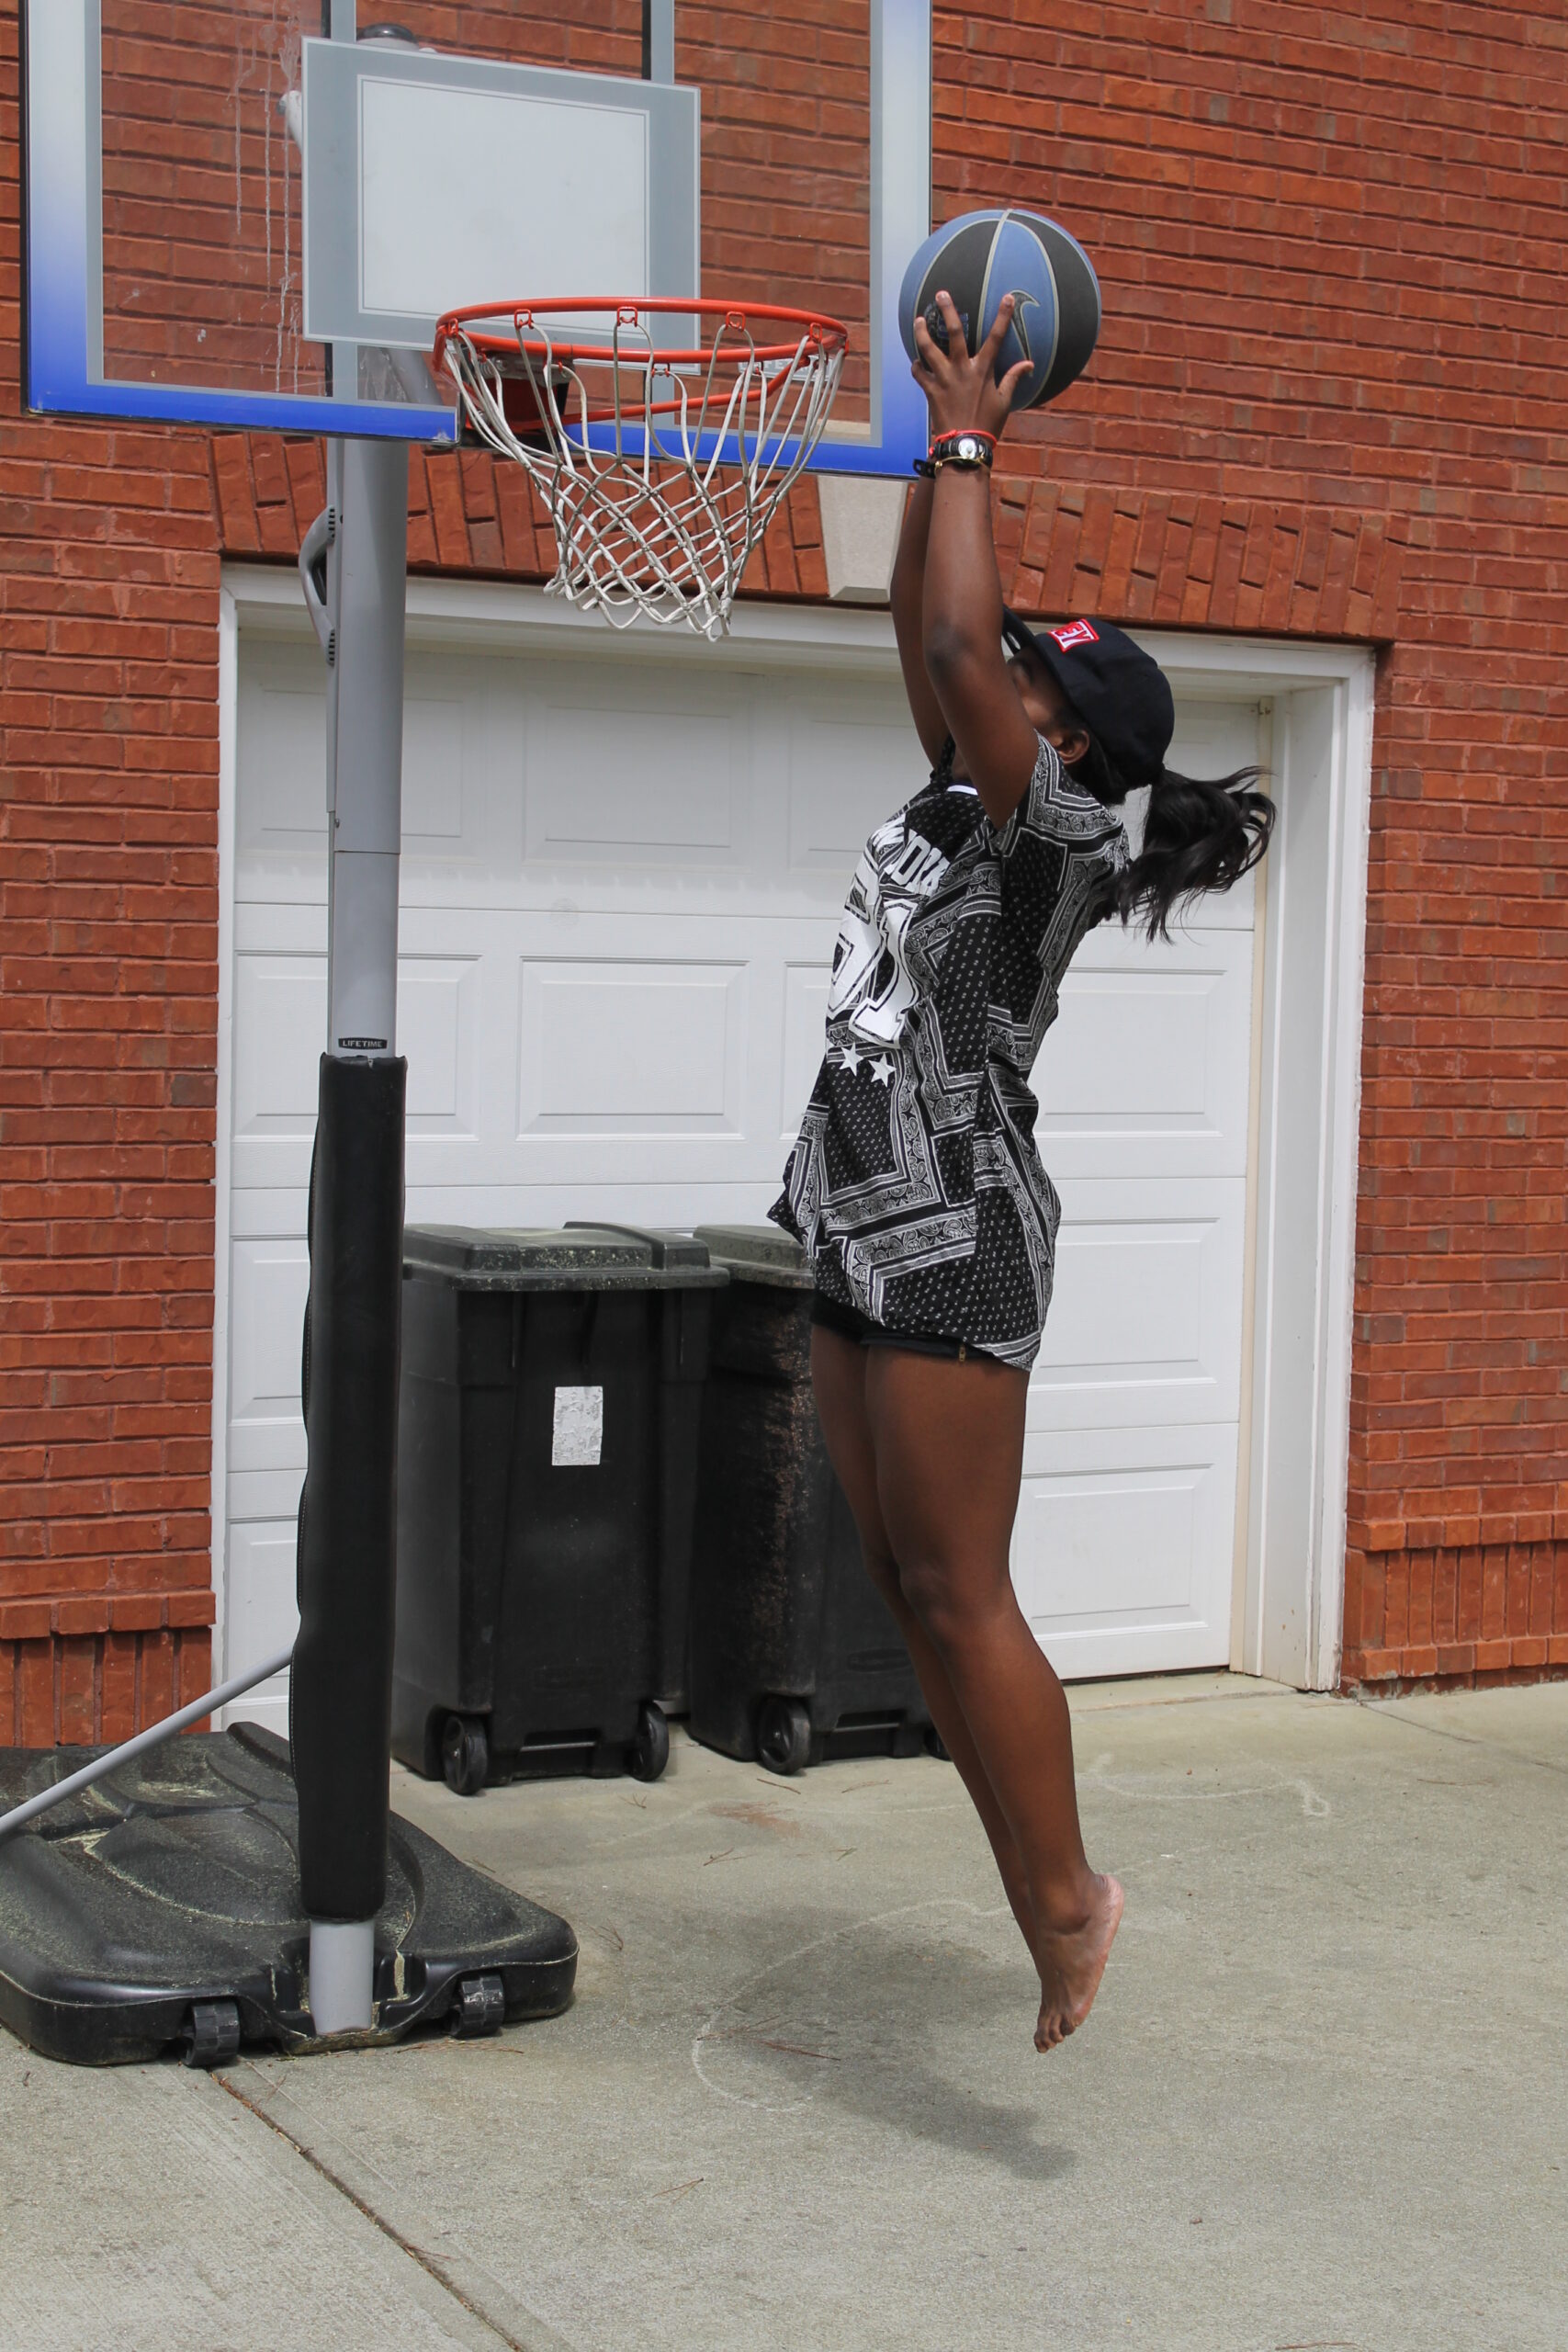 B'Ballin - Basketball Vibes